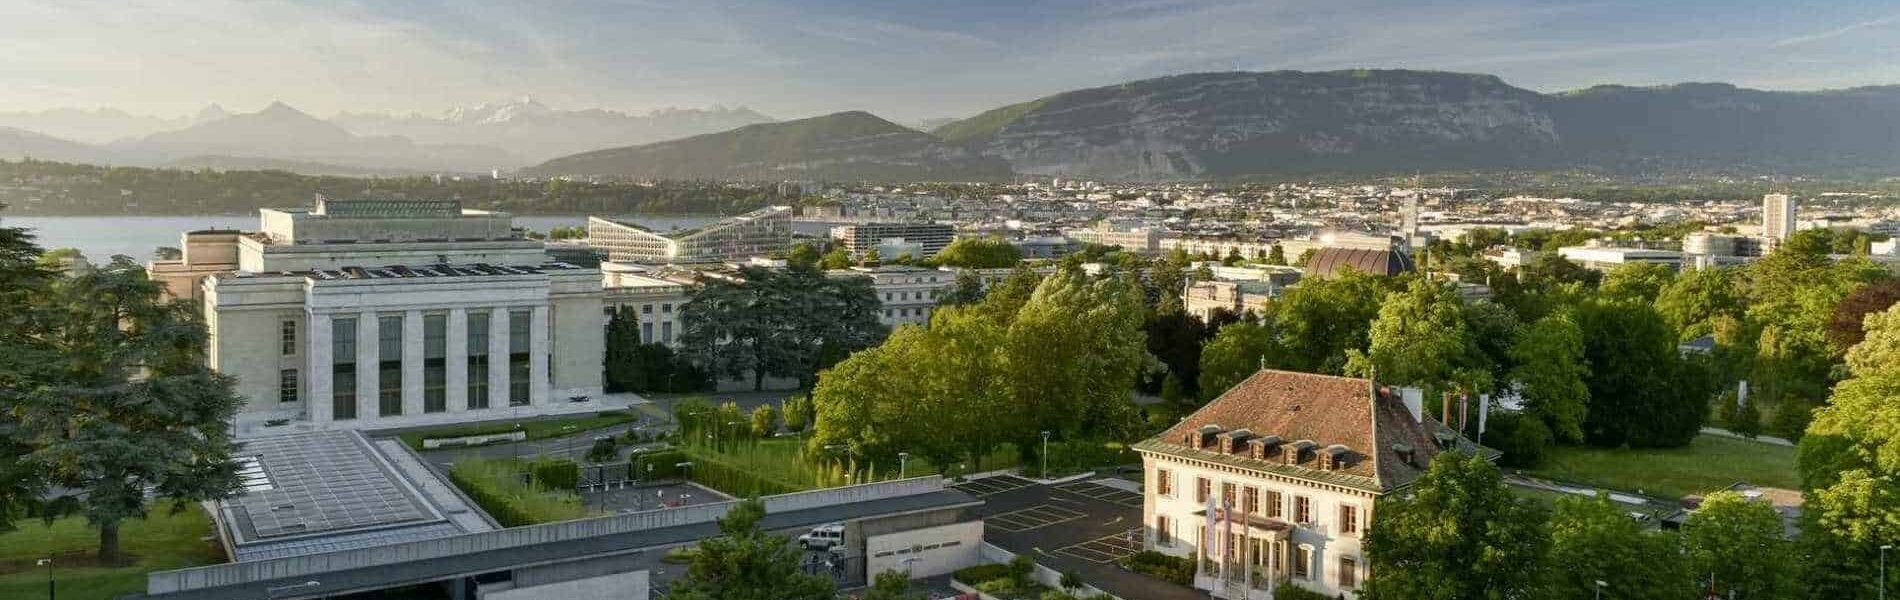 Contacter l'Ecole Hôtelipre de Genève en Suisse